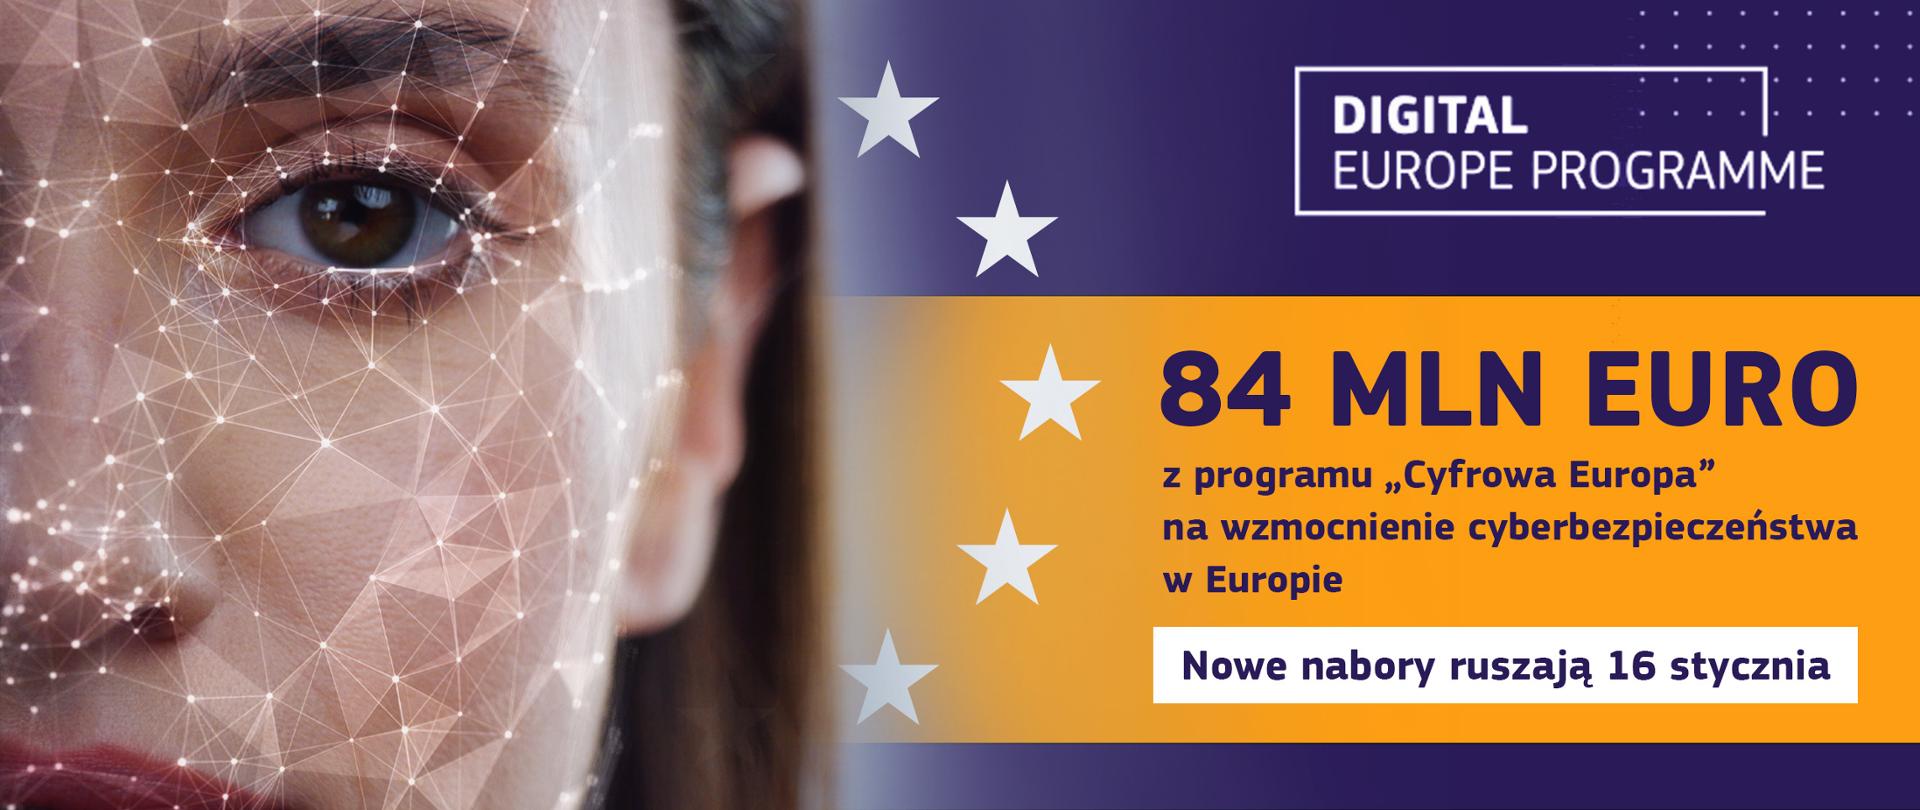 Digital_Europe_Programm_2_-_nowe_nabory_16_stycznia